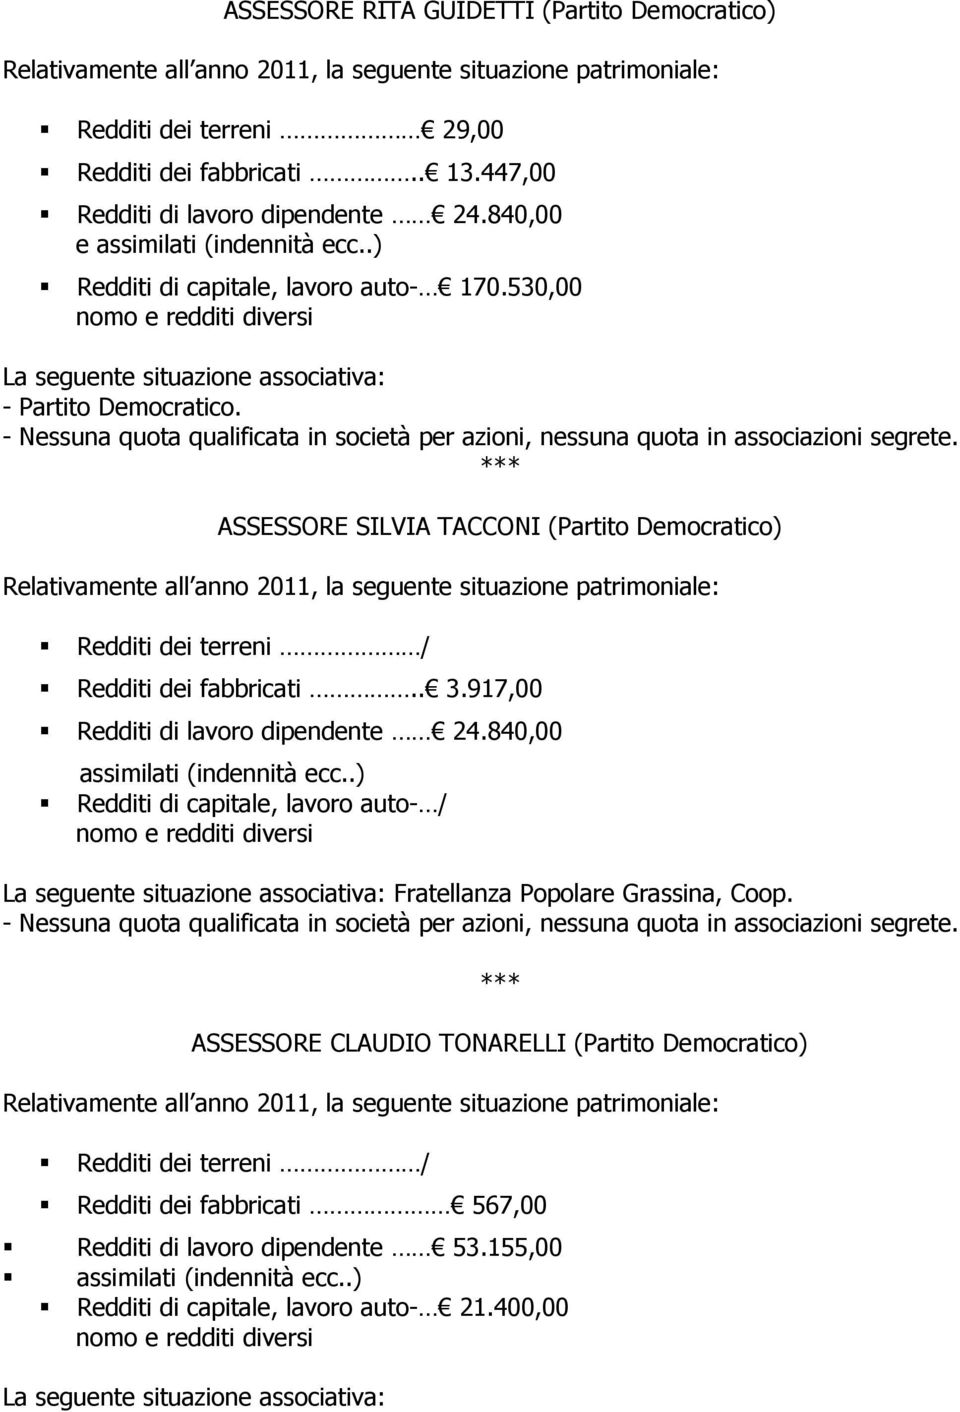 917,00 Redditi di lavoro dipendente 24.840,00 assimilati (indennità ecc..) Fratellanza Popolare Grassina, Coop.